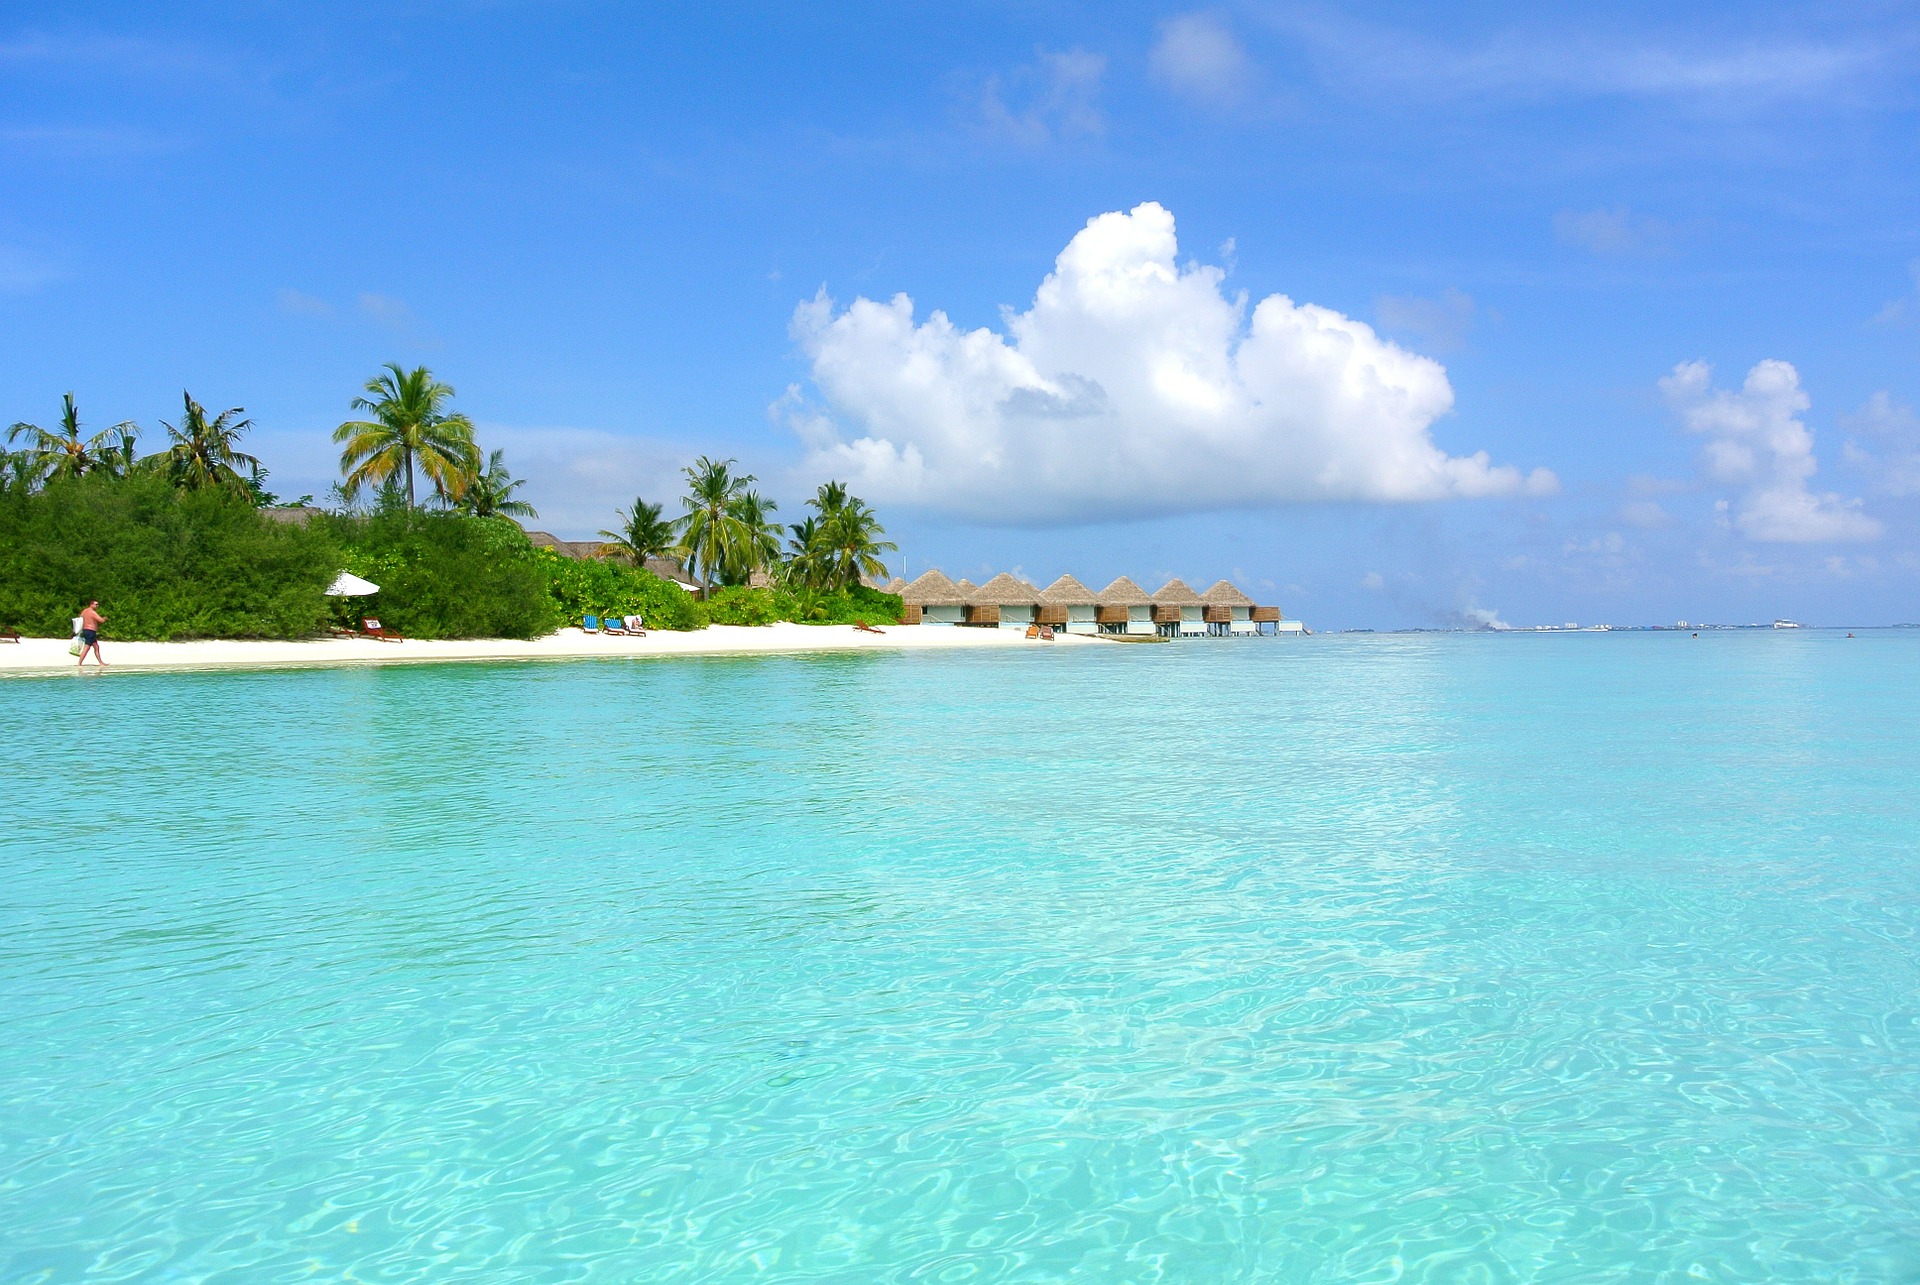 Программа лояльности для туристов заработает на Мальдивах в декабре